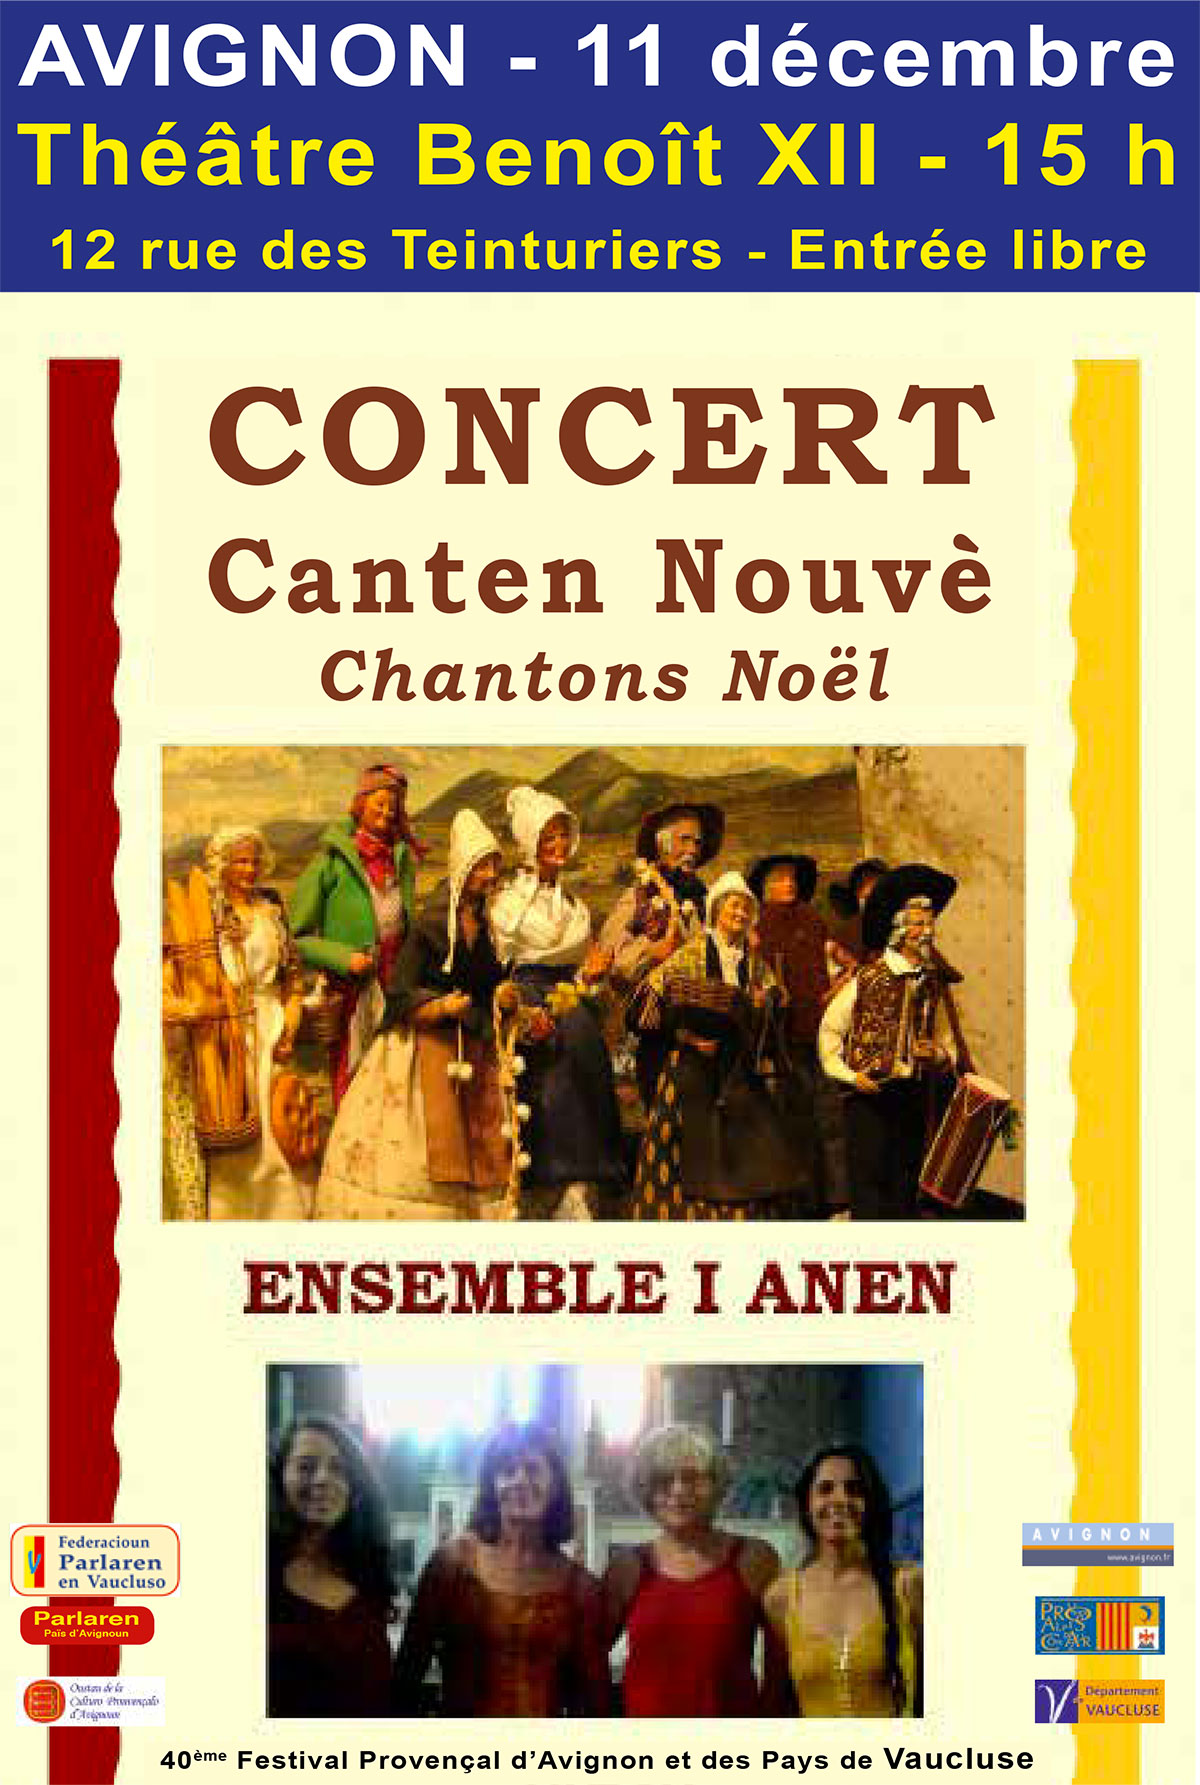 Concert Cantèn Nouvè au Théâtre Benoît XII dimanche 11 décembre